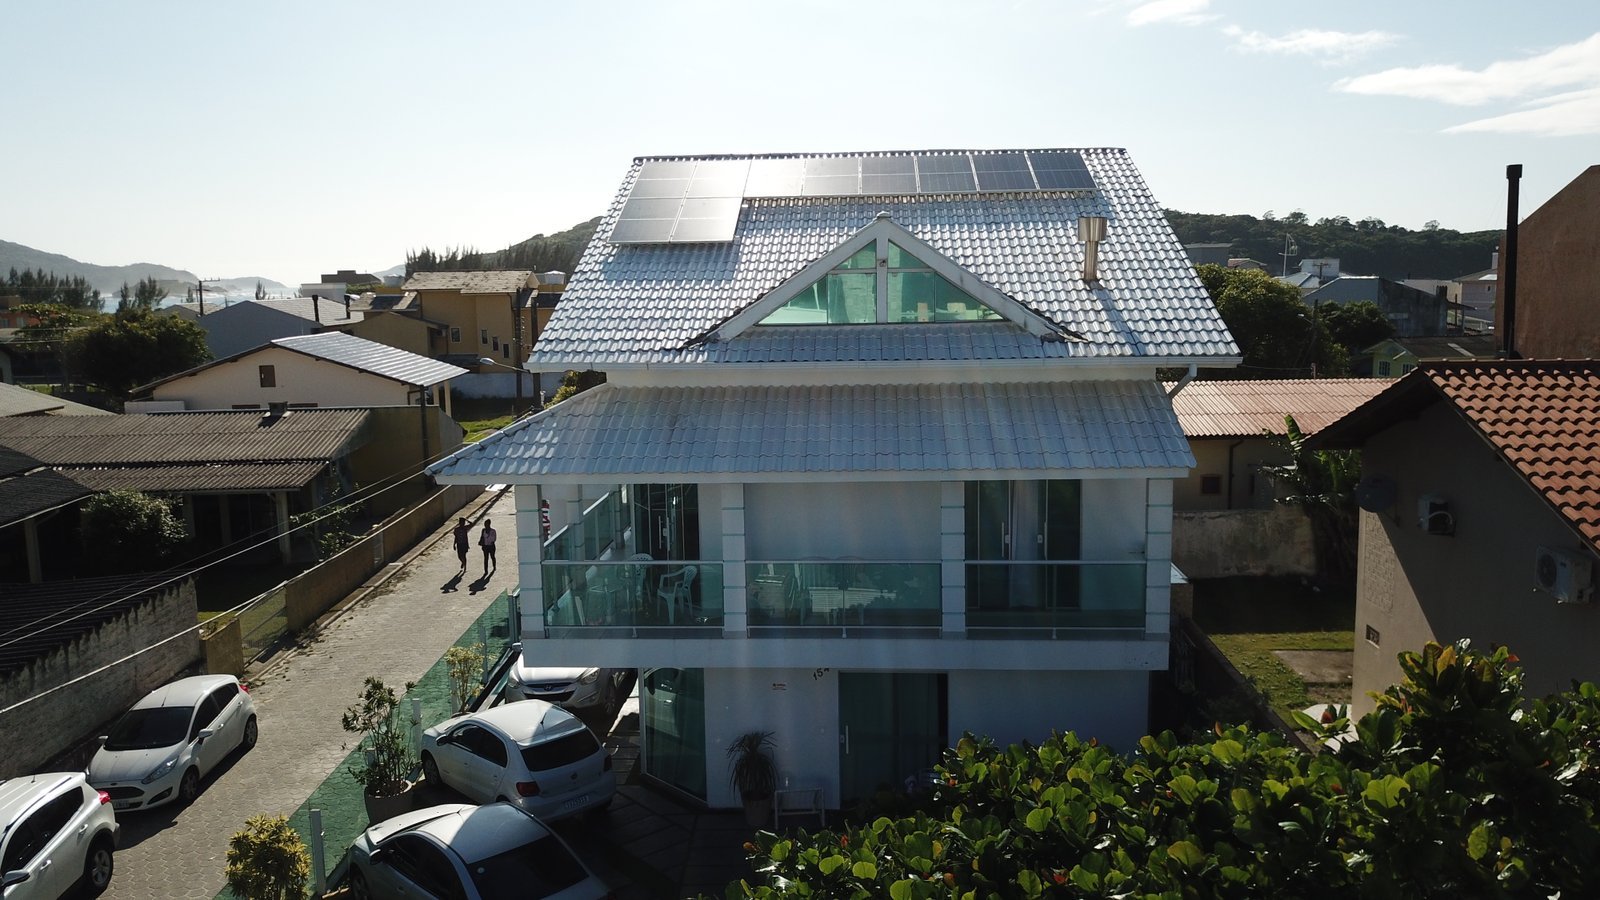 Casa de dois andares com painéis solares instalados no telhado.